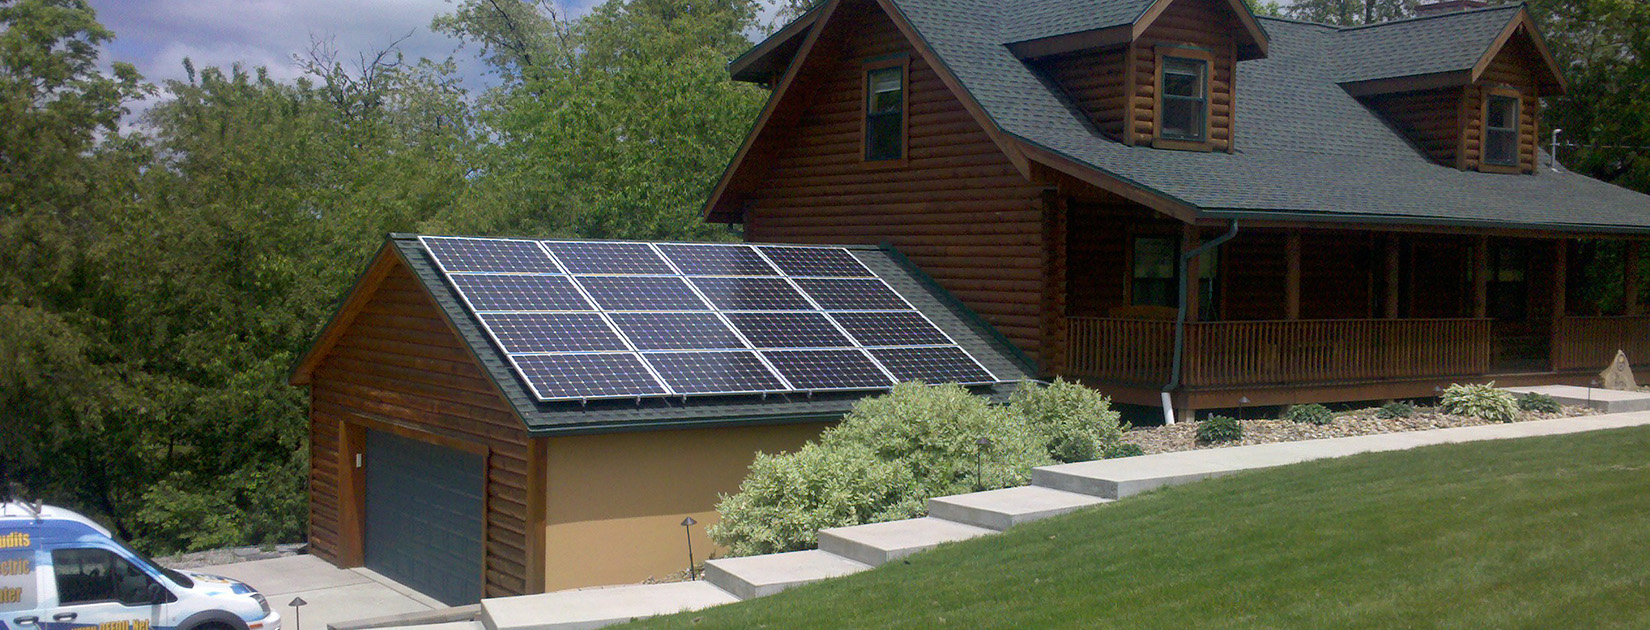 pittsburgh residential solar panel installer